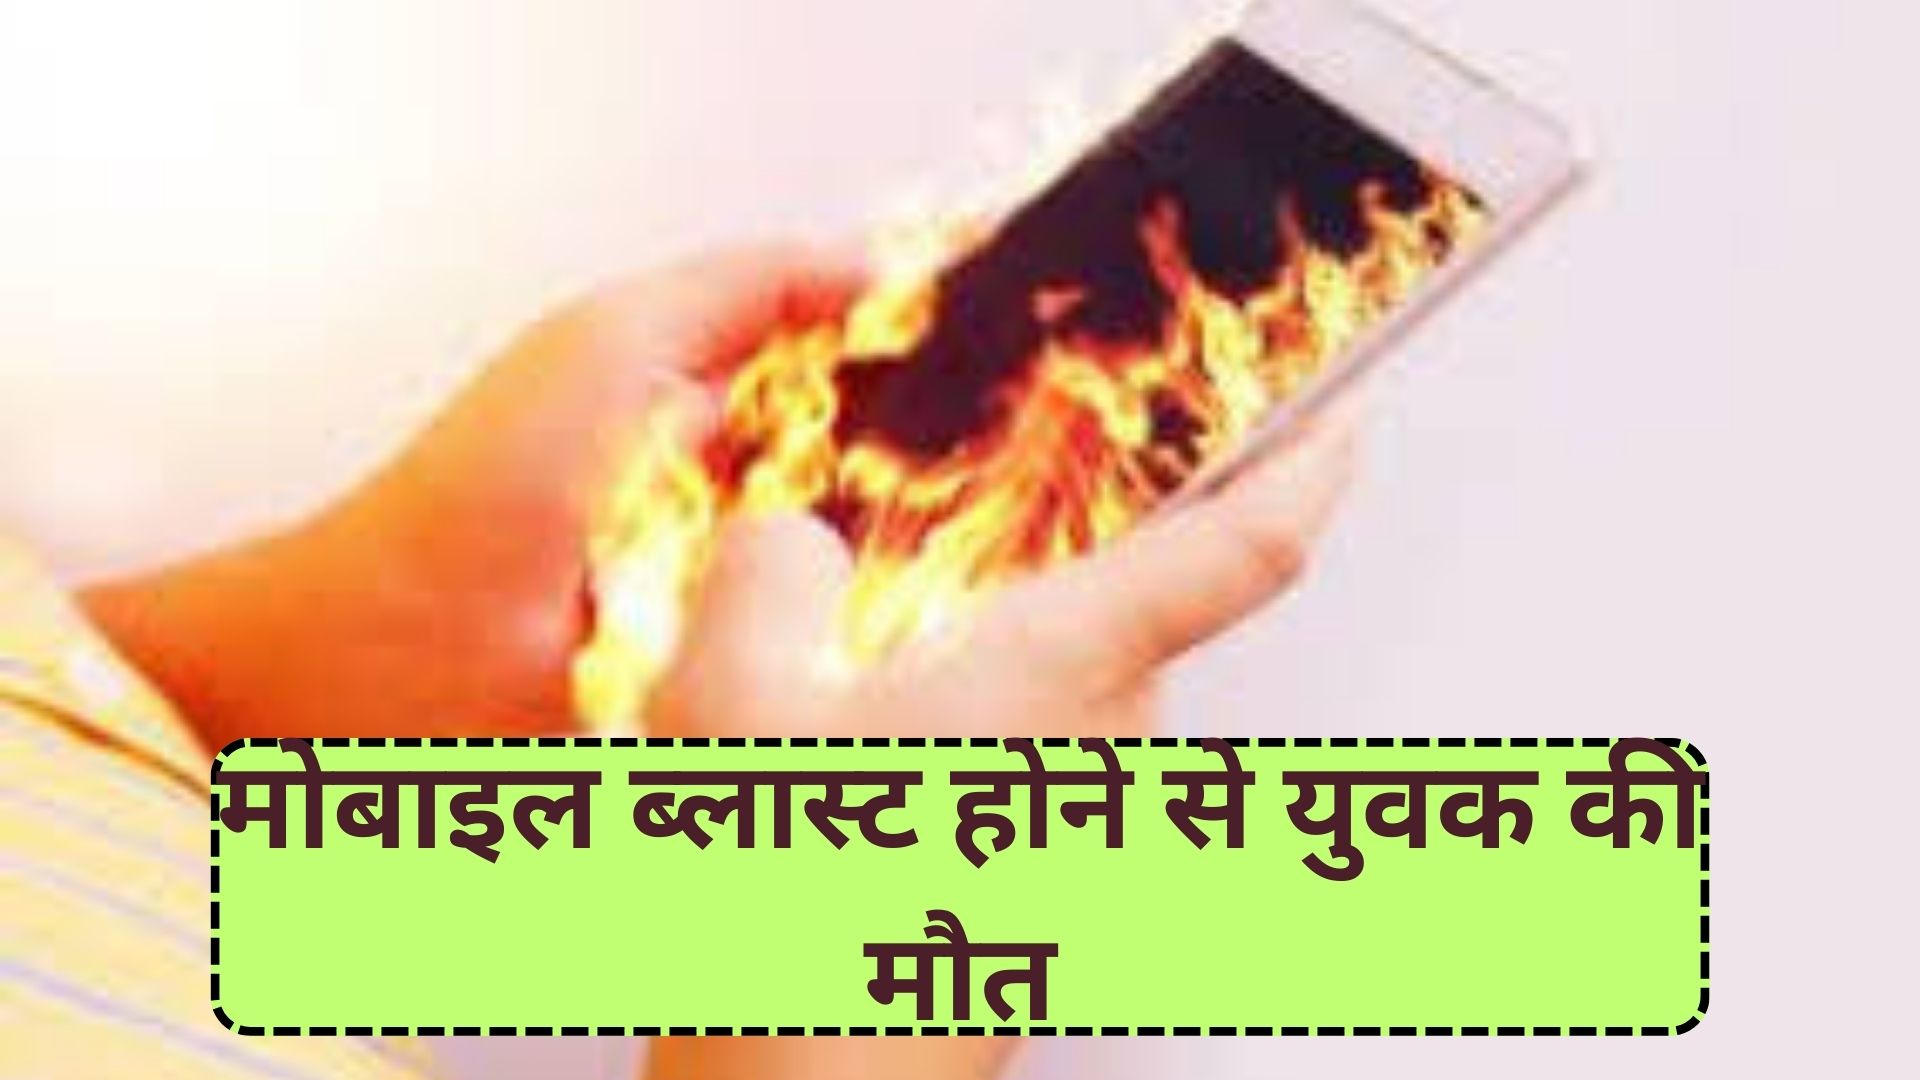 राजस्थान: चार्जिंग में लगाकर मोबाइल देख रहा था, ब्लास्ट होने से युवक की मौके पर ही हुई मौत